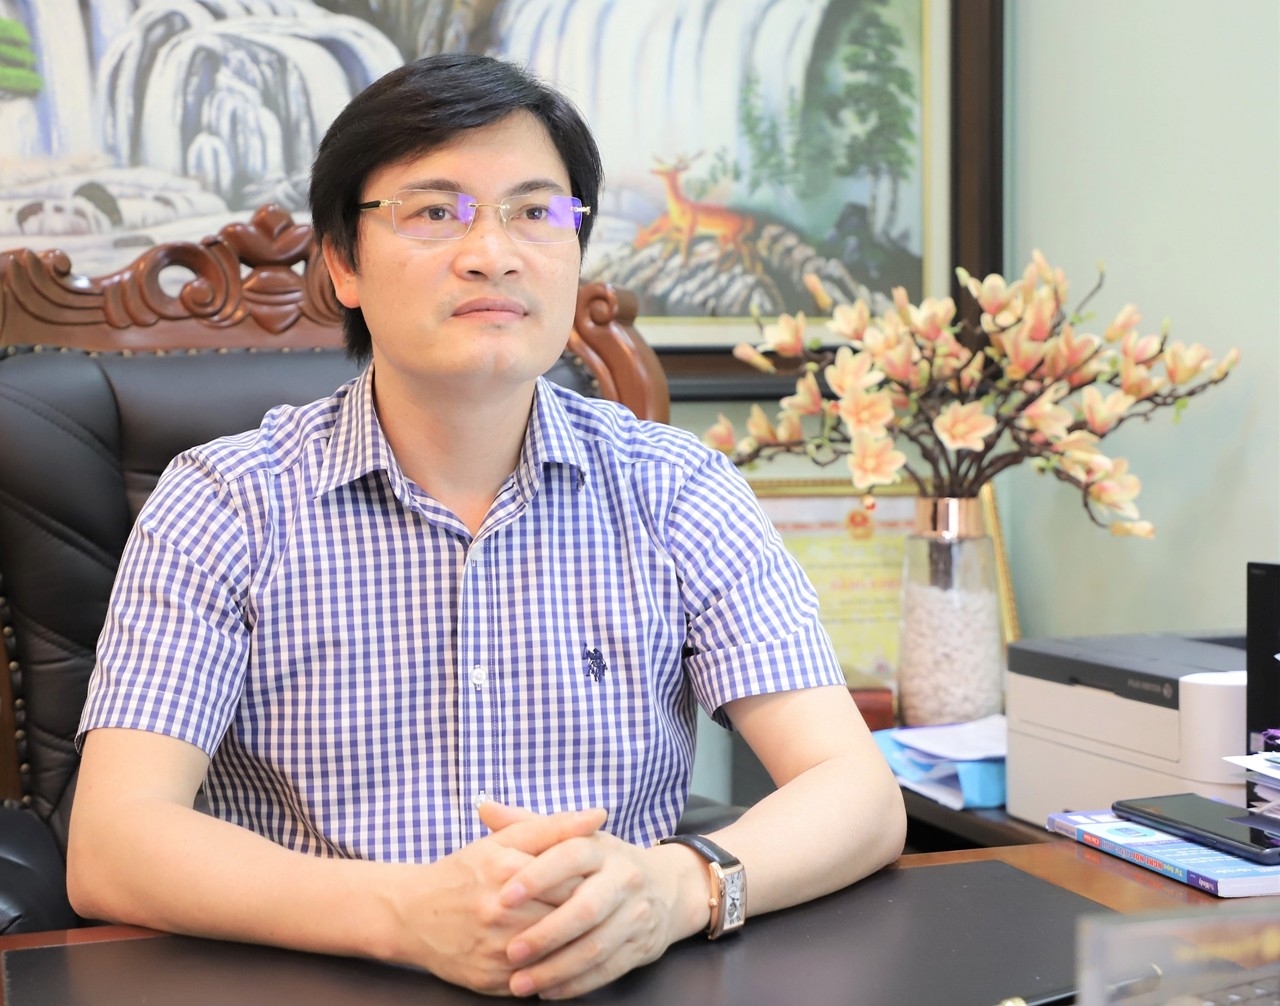  Ông Nguyễn Trọng Diện, Giám đốc Sở Y tế tỉnh Quảng Ninh khẳng định không có đối tượng ưu tiên trong thi tuyển nhân lực ngành Y tế, để hướng đến đội ngũ y tế chất lượng cao